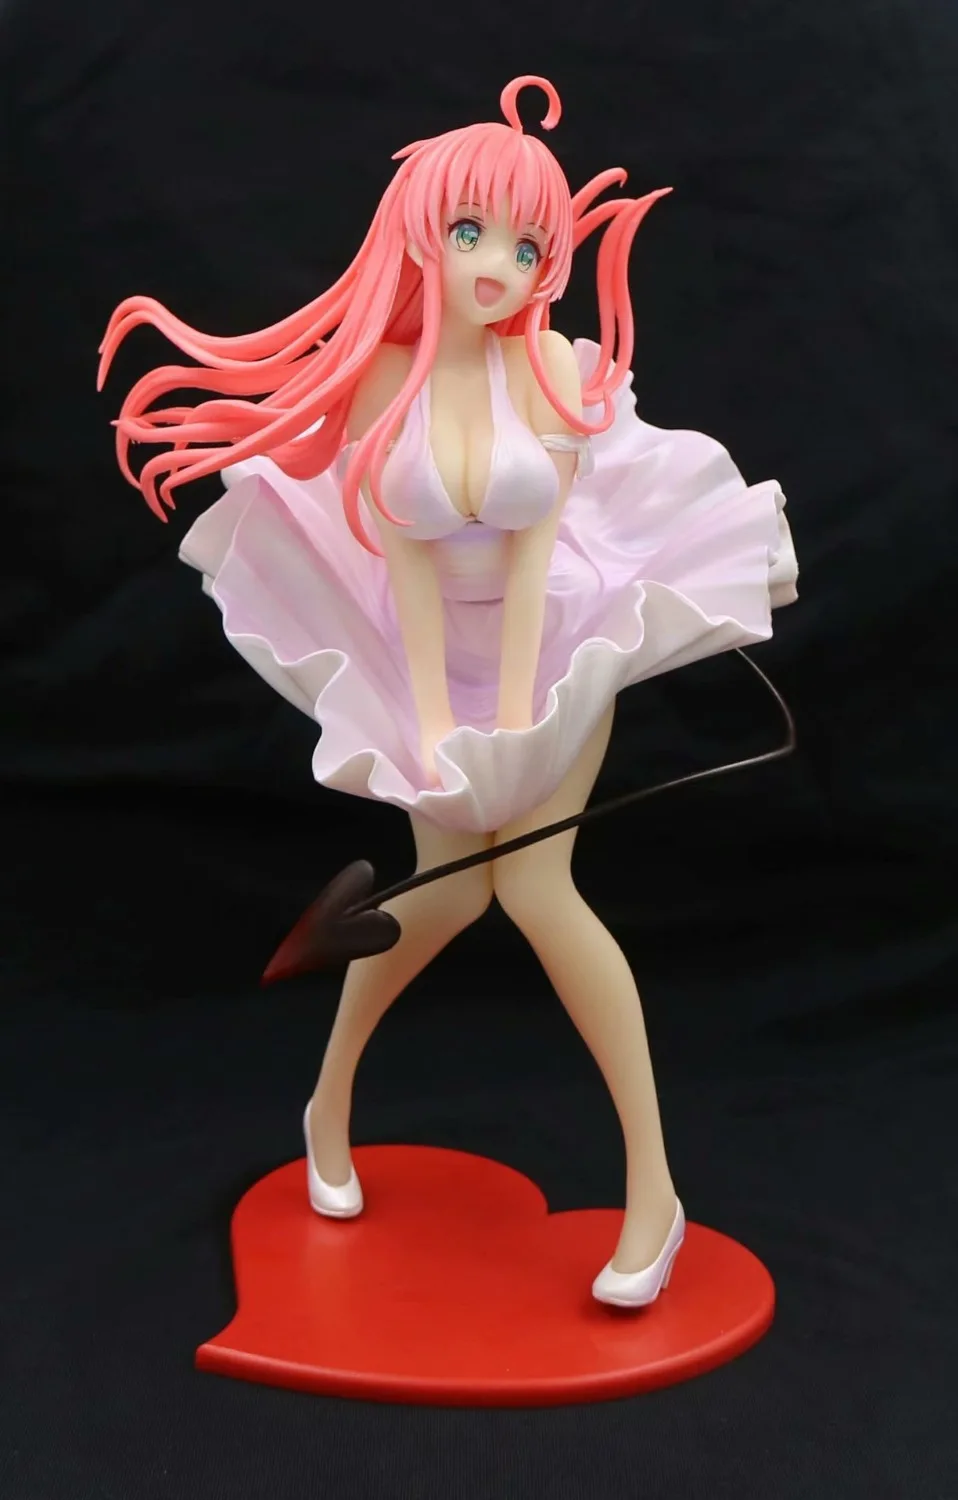 Любовь LaLa фигурки с розовым платьем модель игрушки 26 см